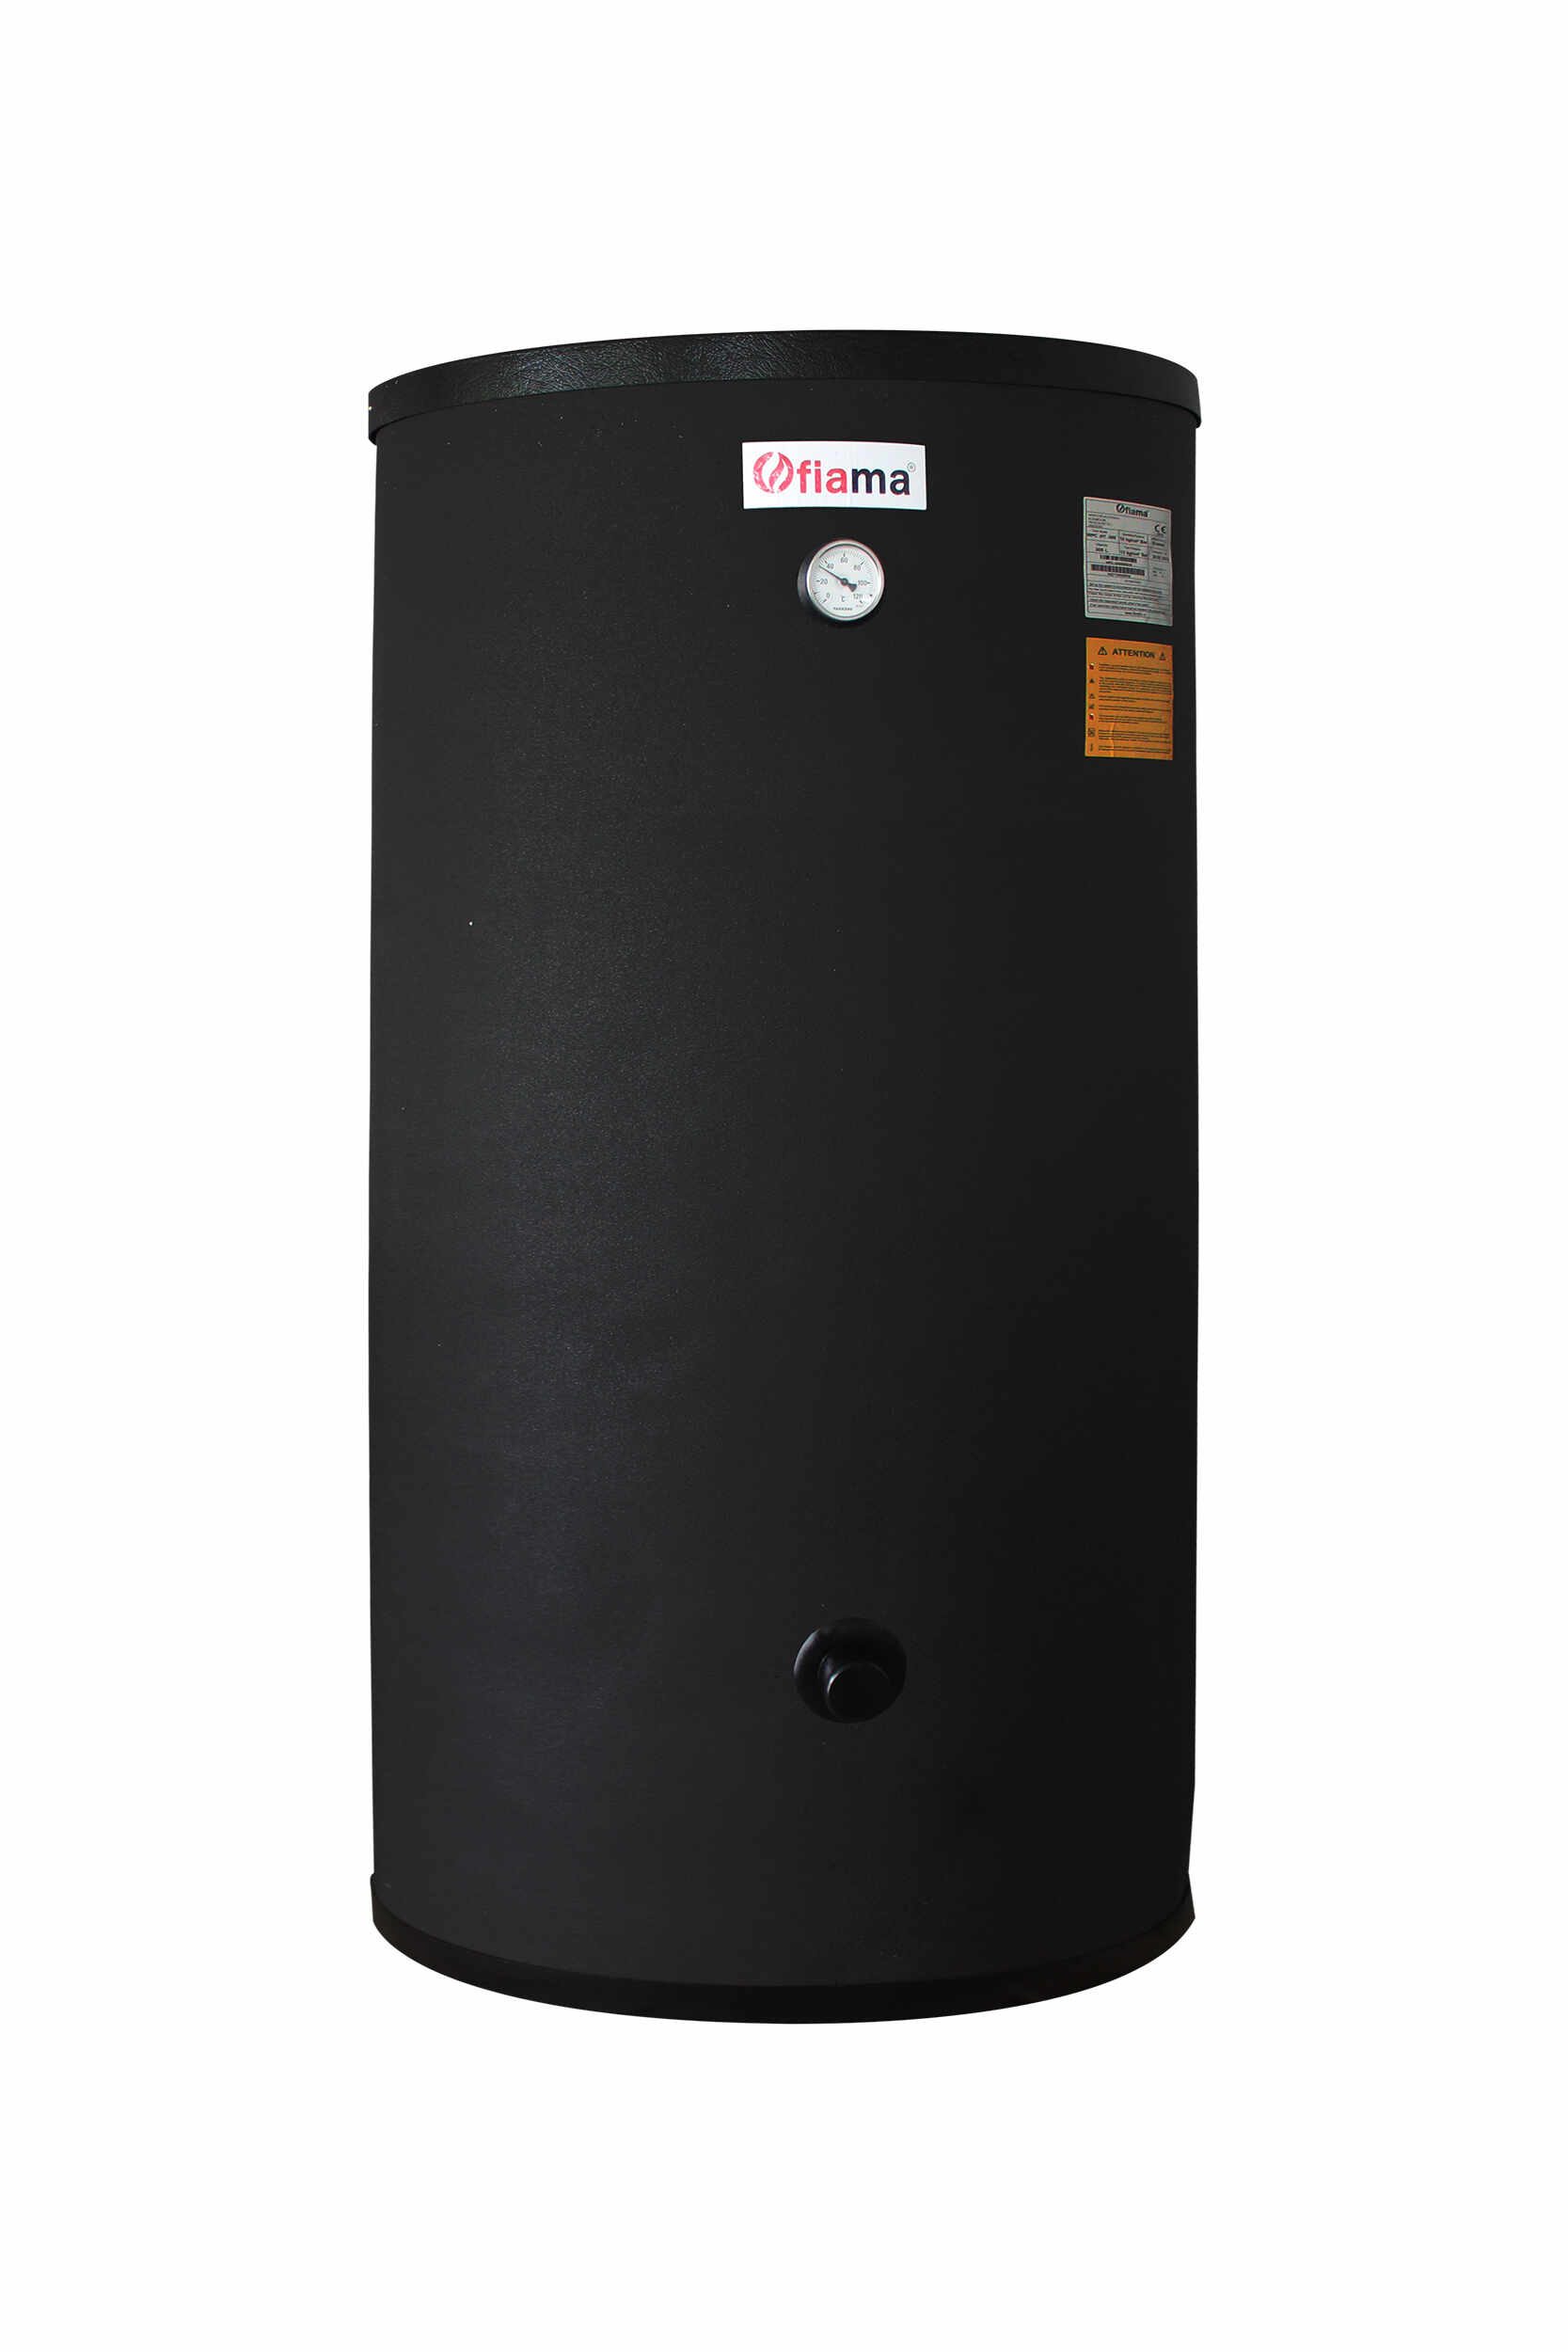 Boiler cu 2 serpentine FIAMA WPC HT 200 LT 2S, pentru centrala termica si solar, montaj pe sol, izolatie termica, manta de protectie, serpentine bivalent 